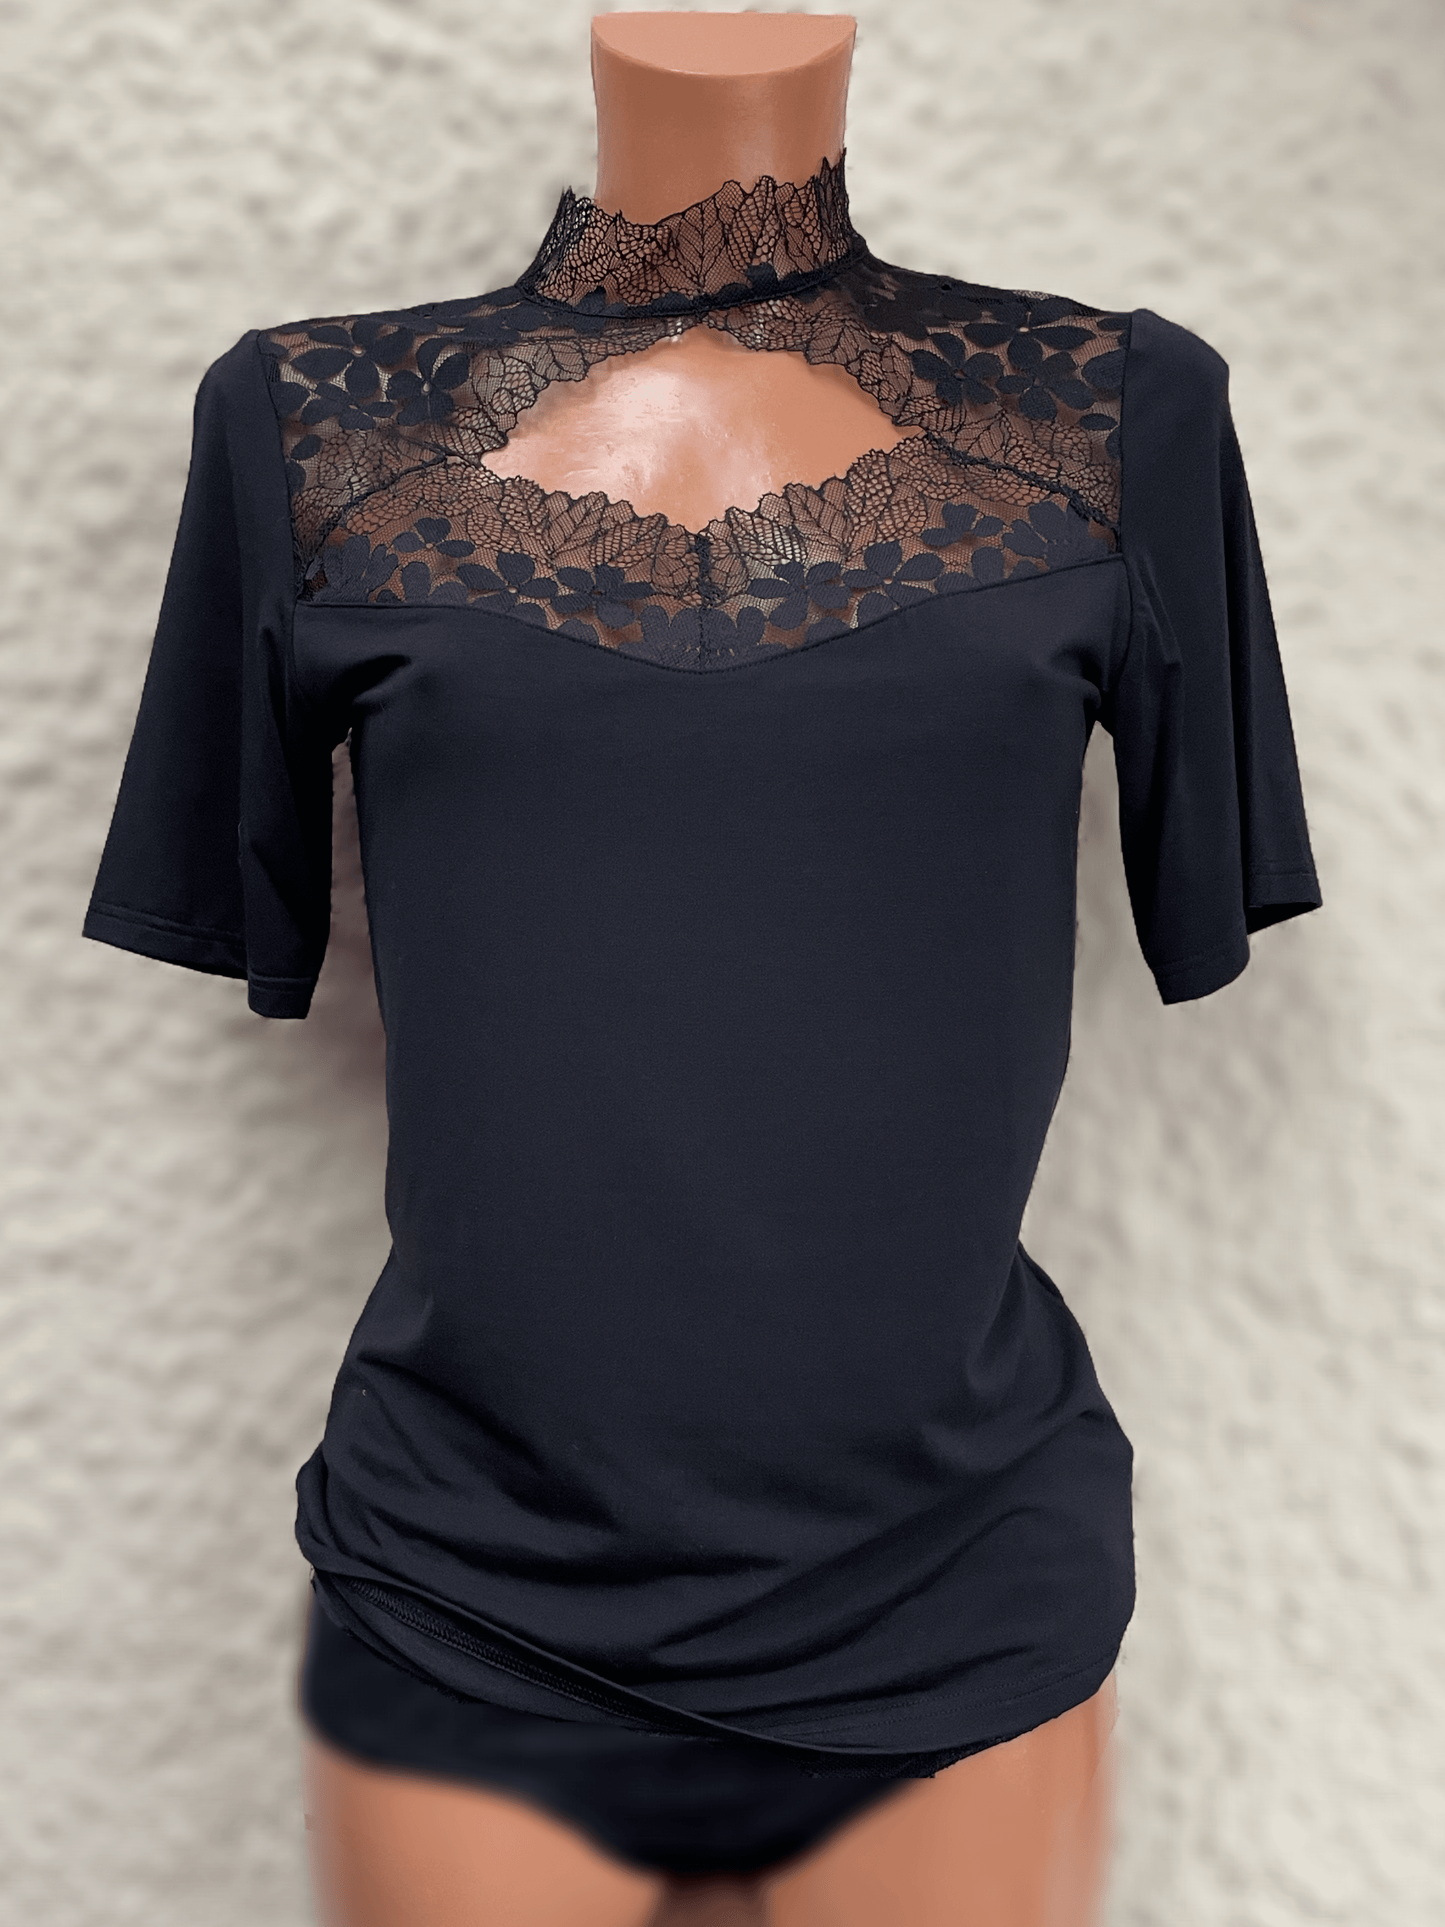 Trachtenbluse, Modal Shirt, Nina von C., schwarz, hochgeschlossen, Gr. 38 Shirt Nina von C. 